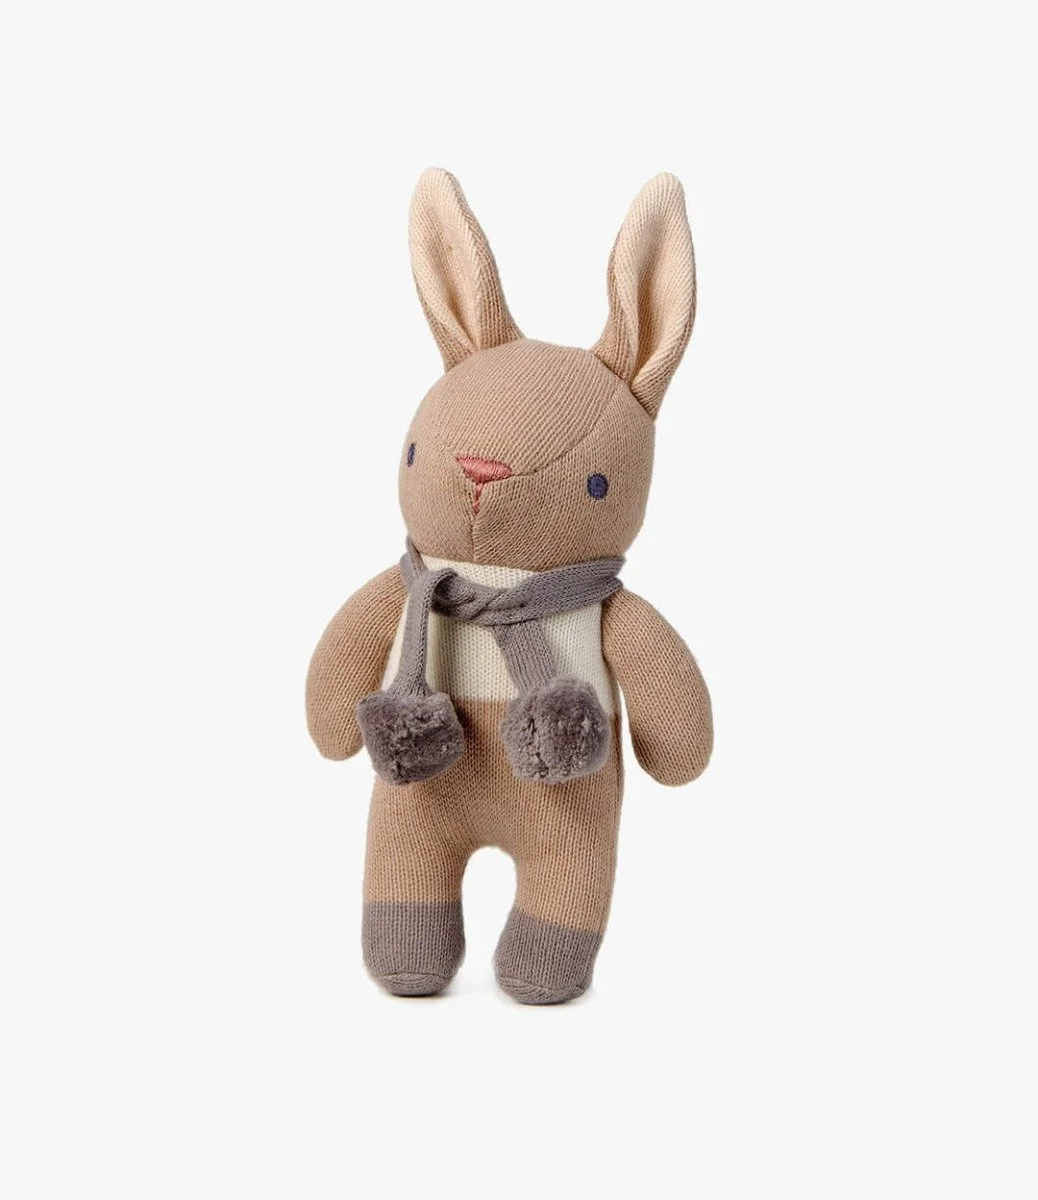 مجموعة هدايا الأرنب رمادي داكن من ثريدبير ديزاين